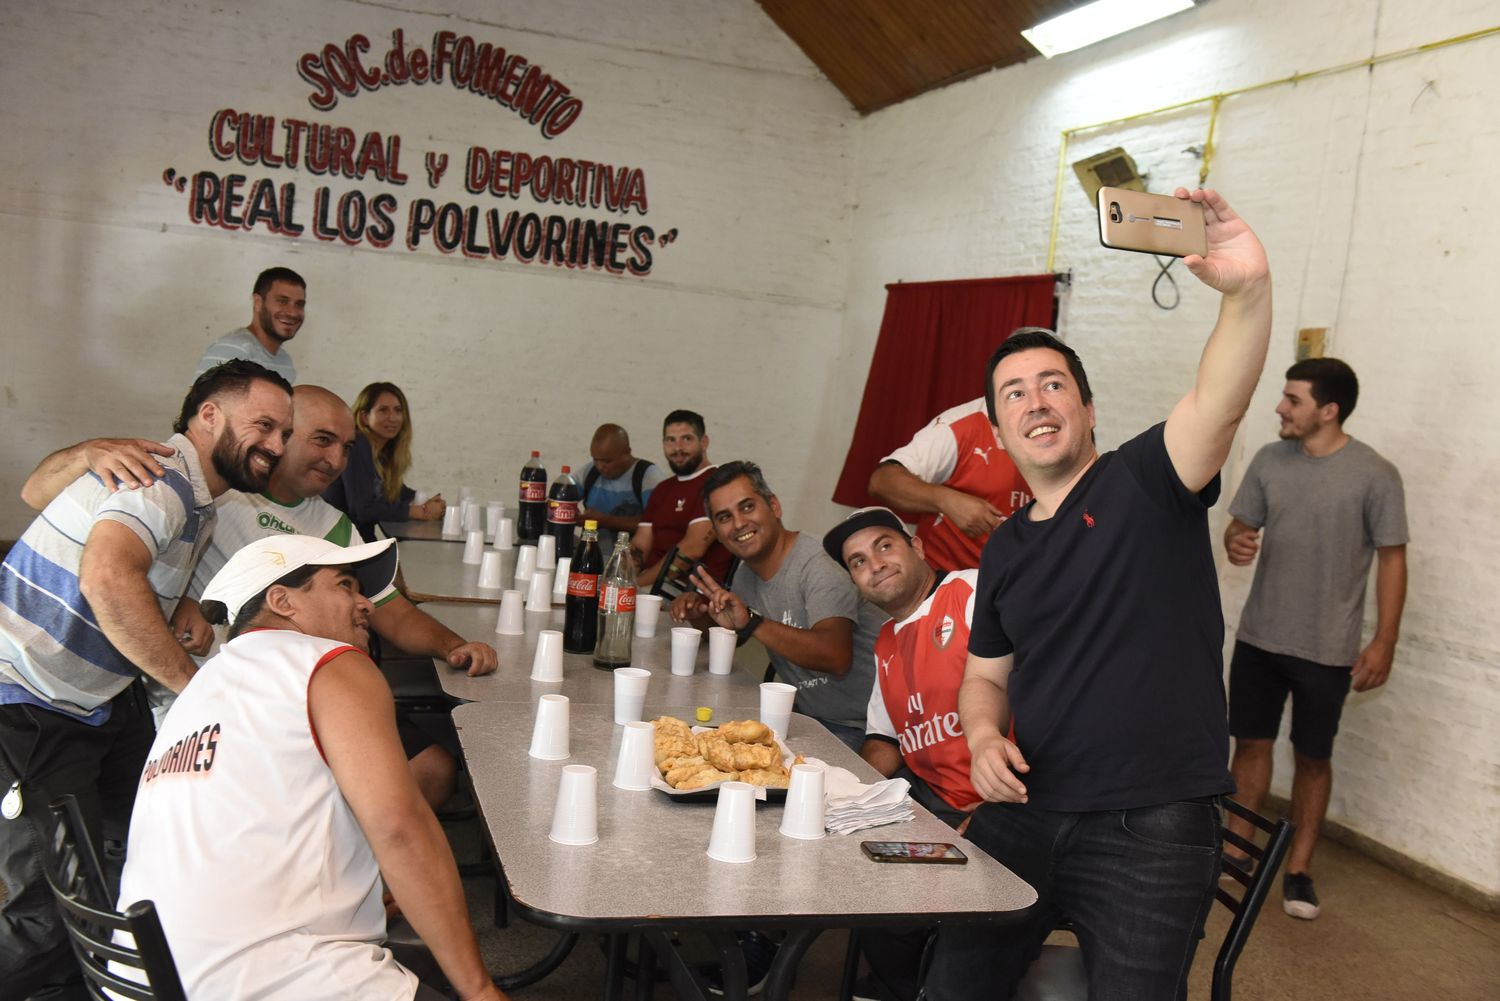 Malvinas Argentinas: El intendente Nardini visitó el club "Real Los Polvorines" y le plantearon sus necesidades